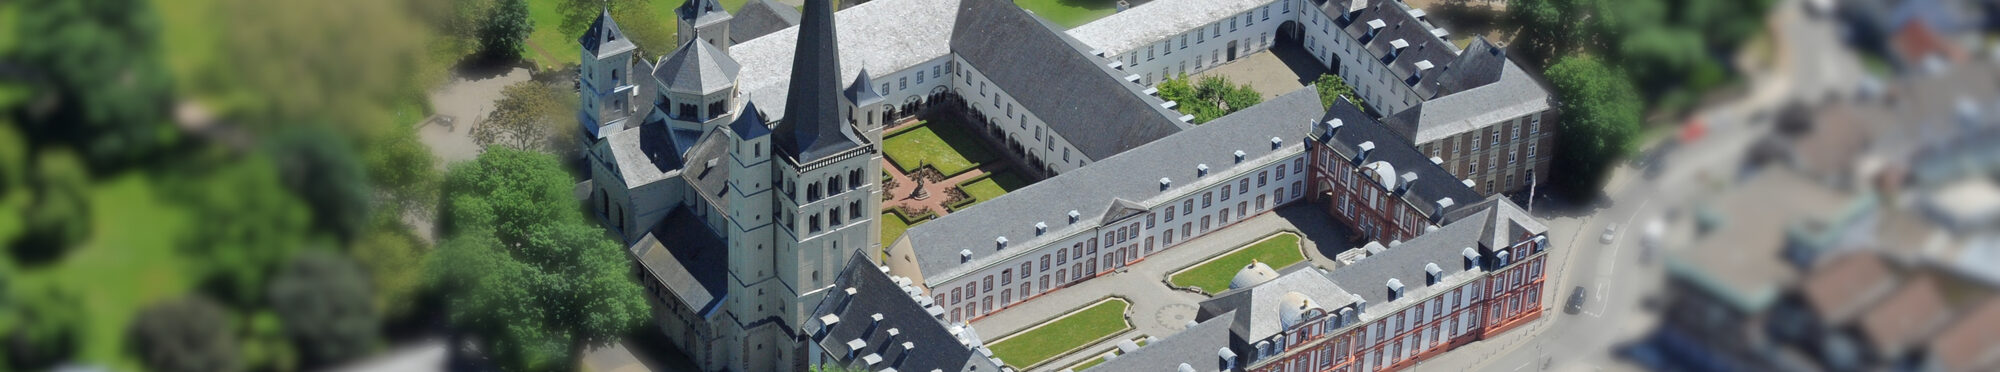 Luftbild Abtei Brauweiler